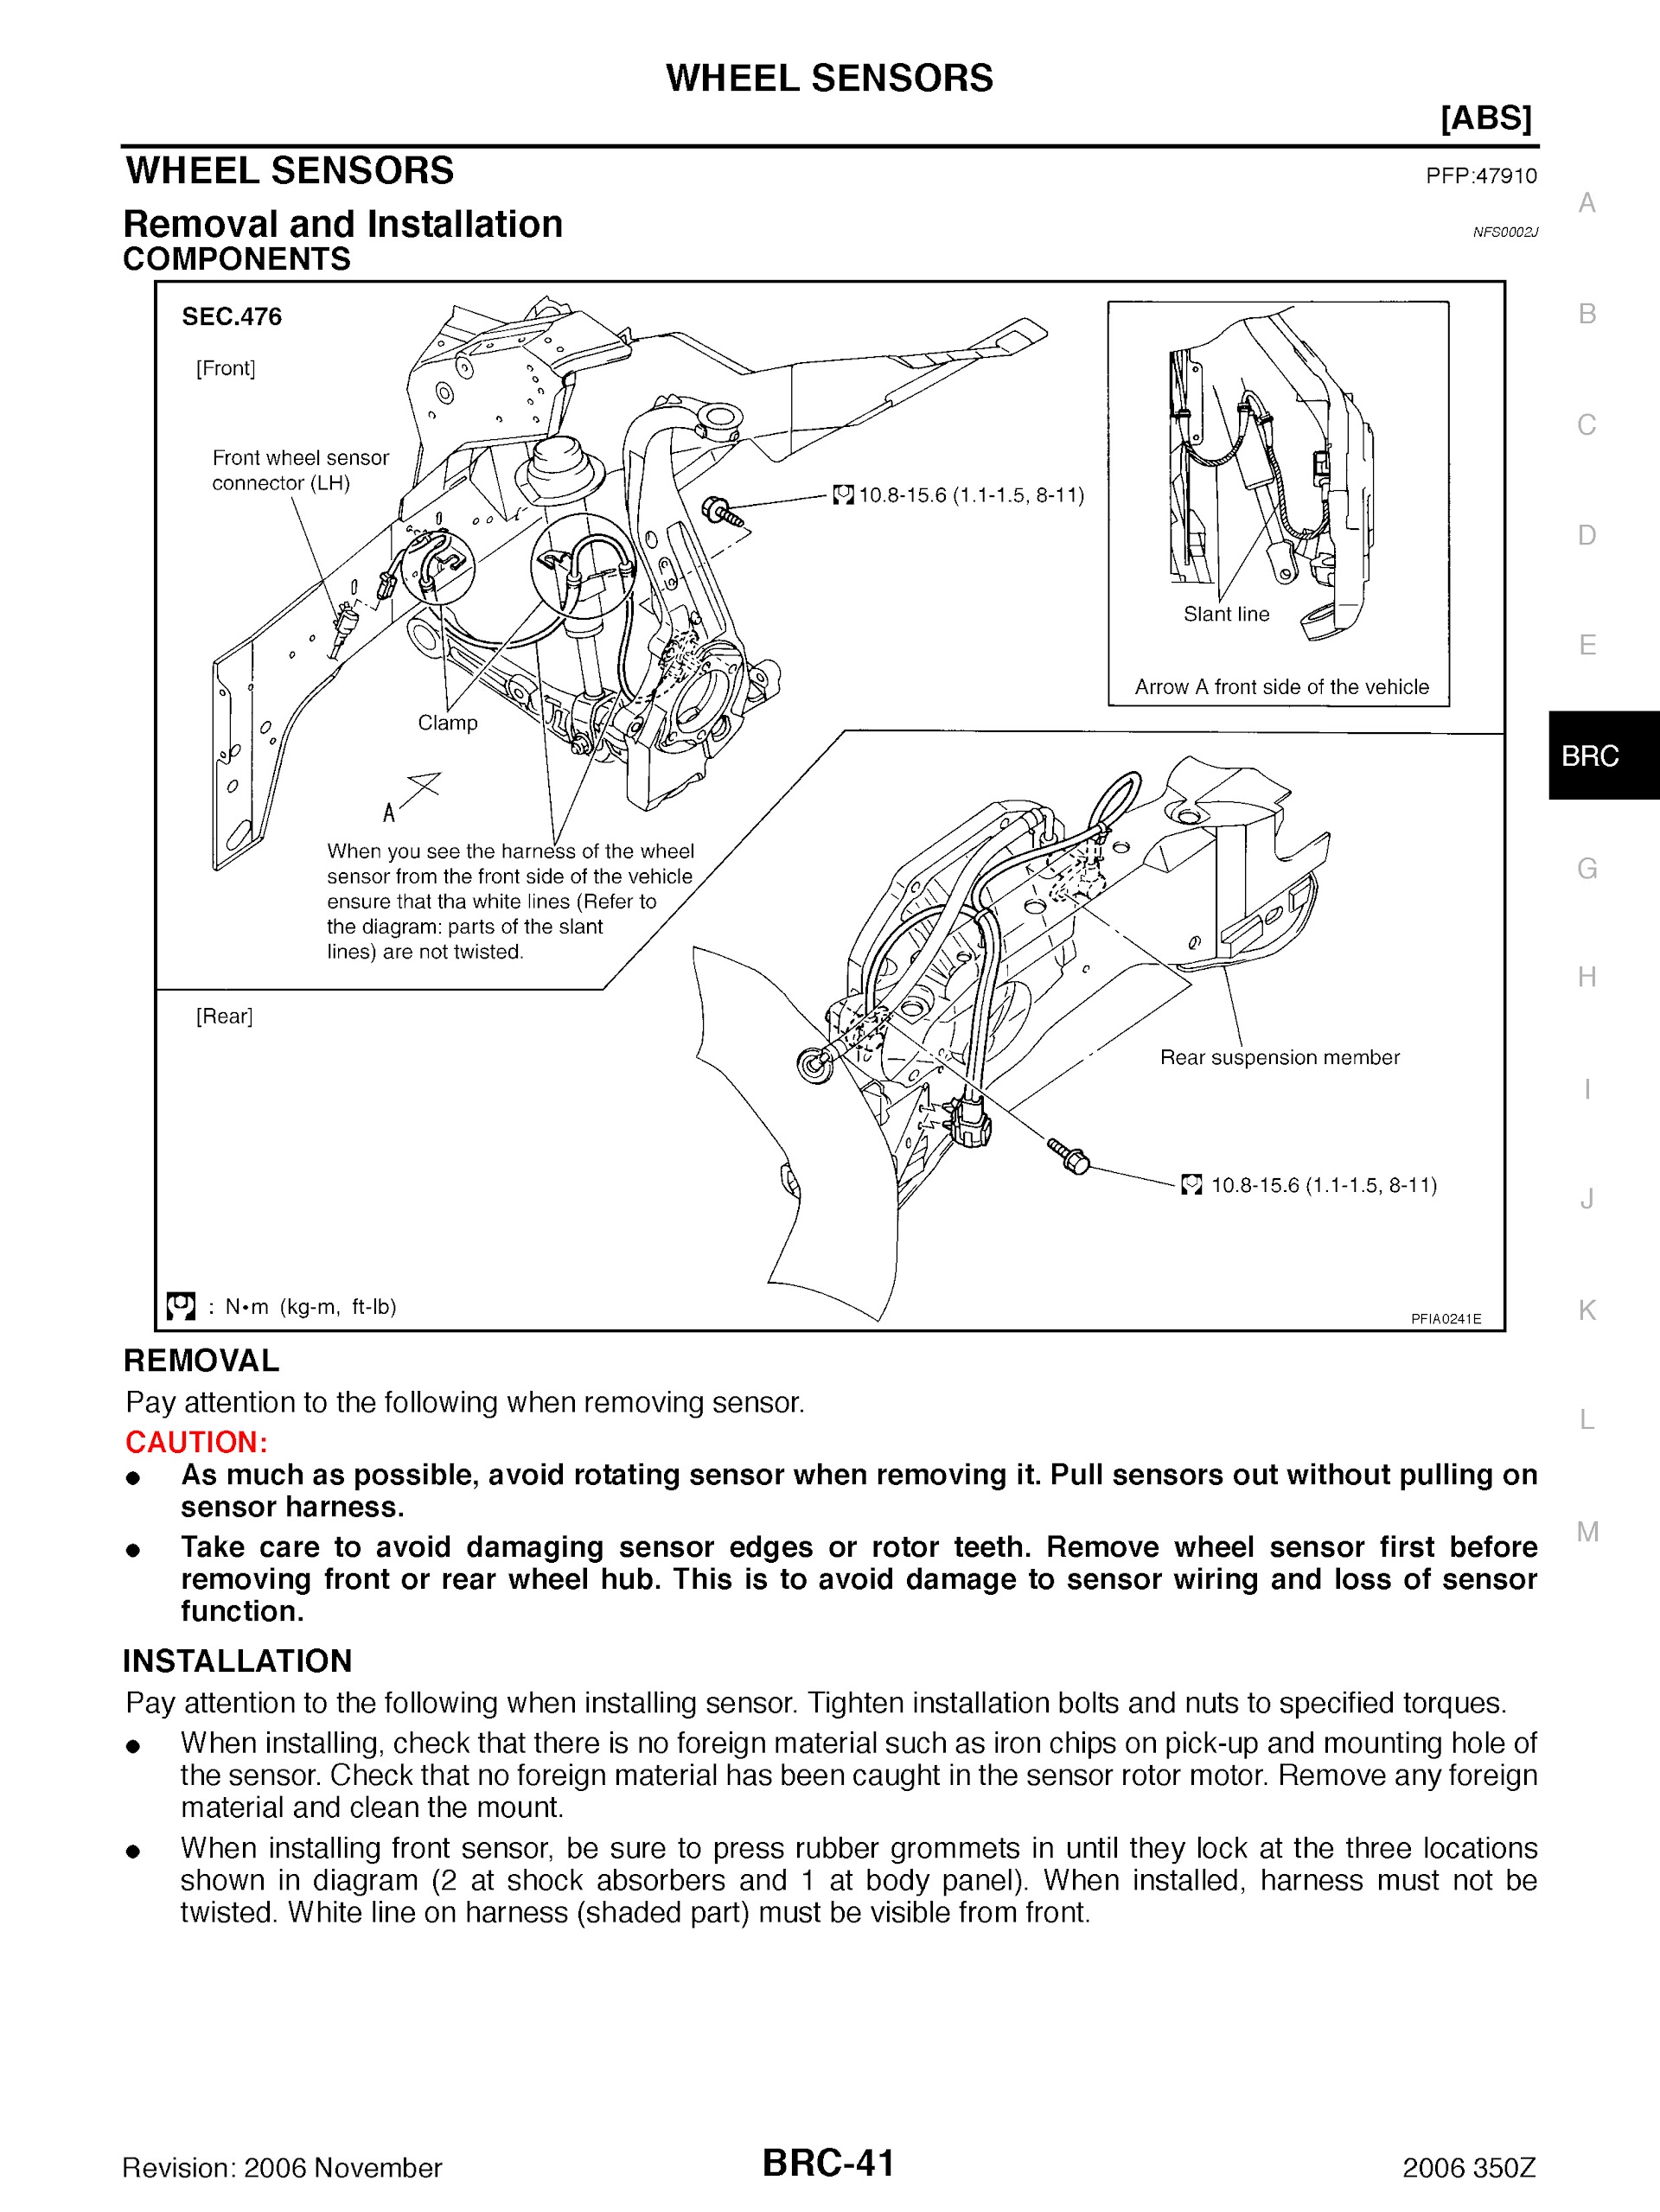 2005-2006 Nissan 350Z Repair Manual, WHeel Sensors